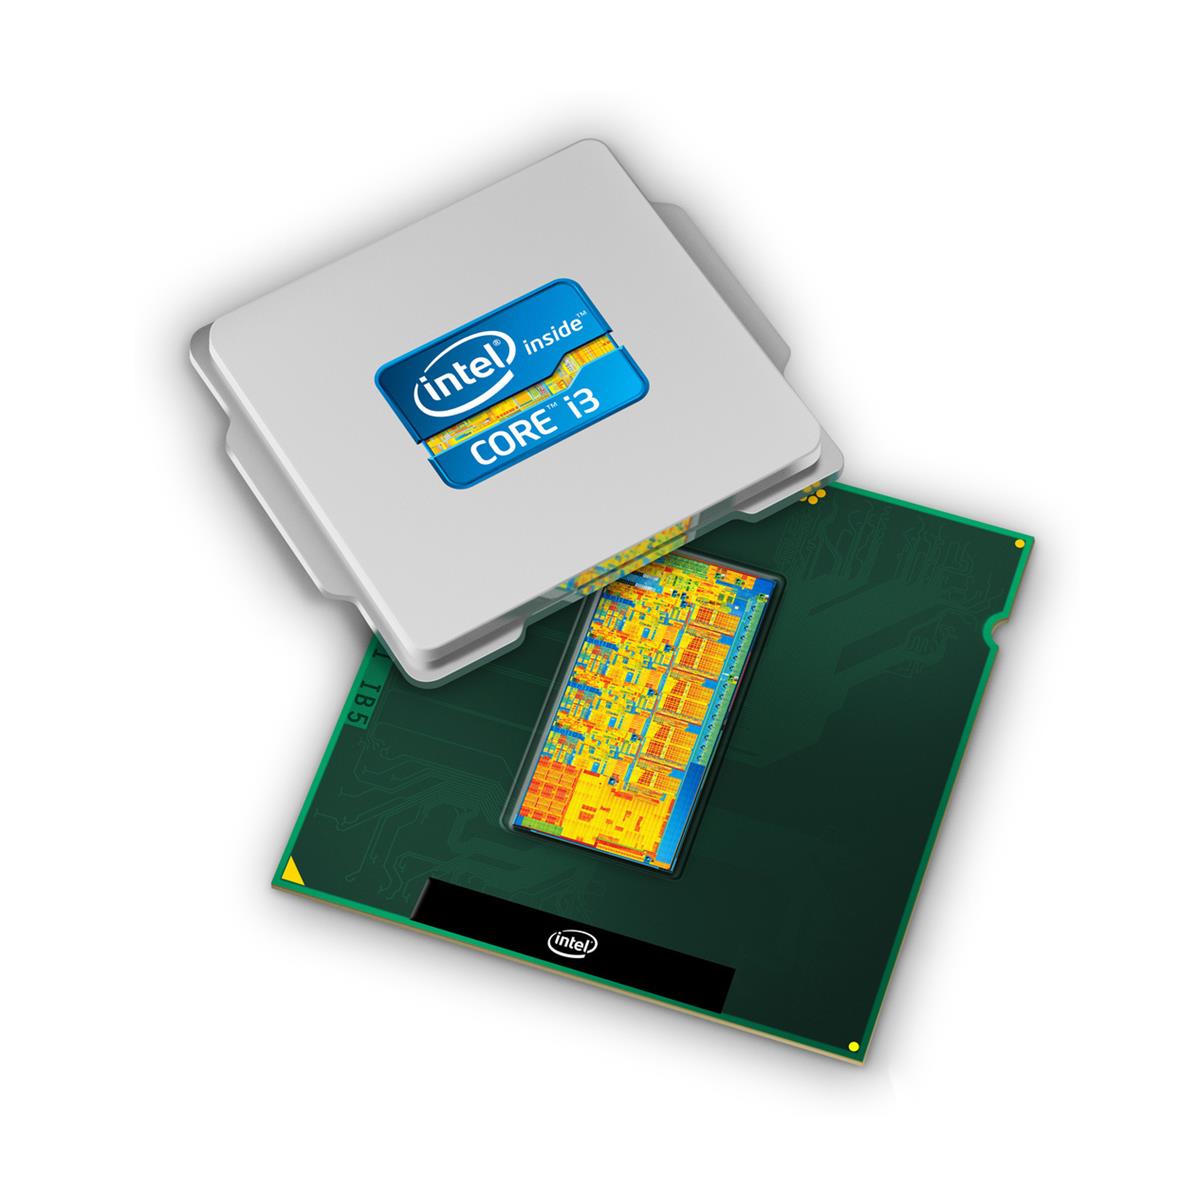 57Y6226 Lenovo 2.13GHz 2.50GT/s DMI 3MB L3 Cache Intel Core i3-330M Dual Core Mobile Processor Upgrade for ThinkPad EDGE 14 EDGE 15 L412 L512 T410 T510